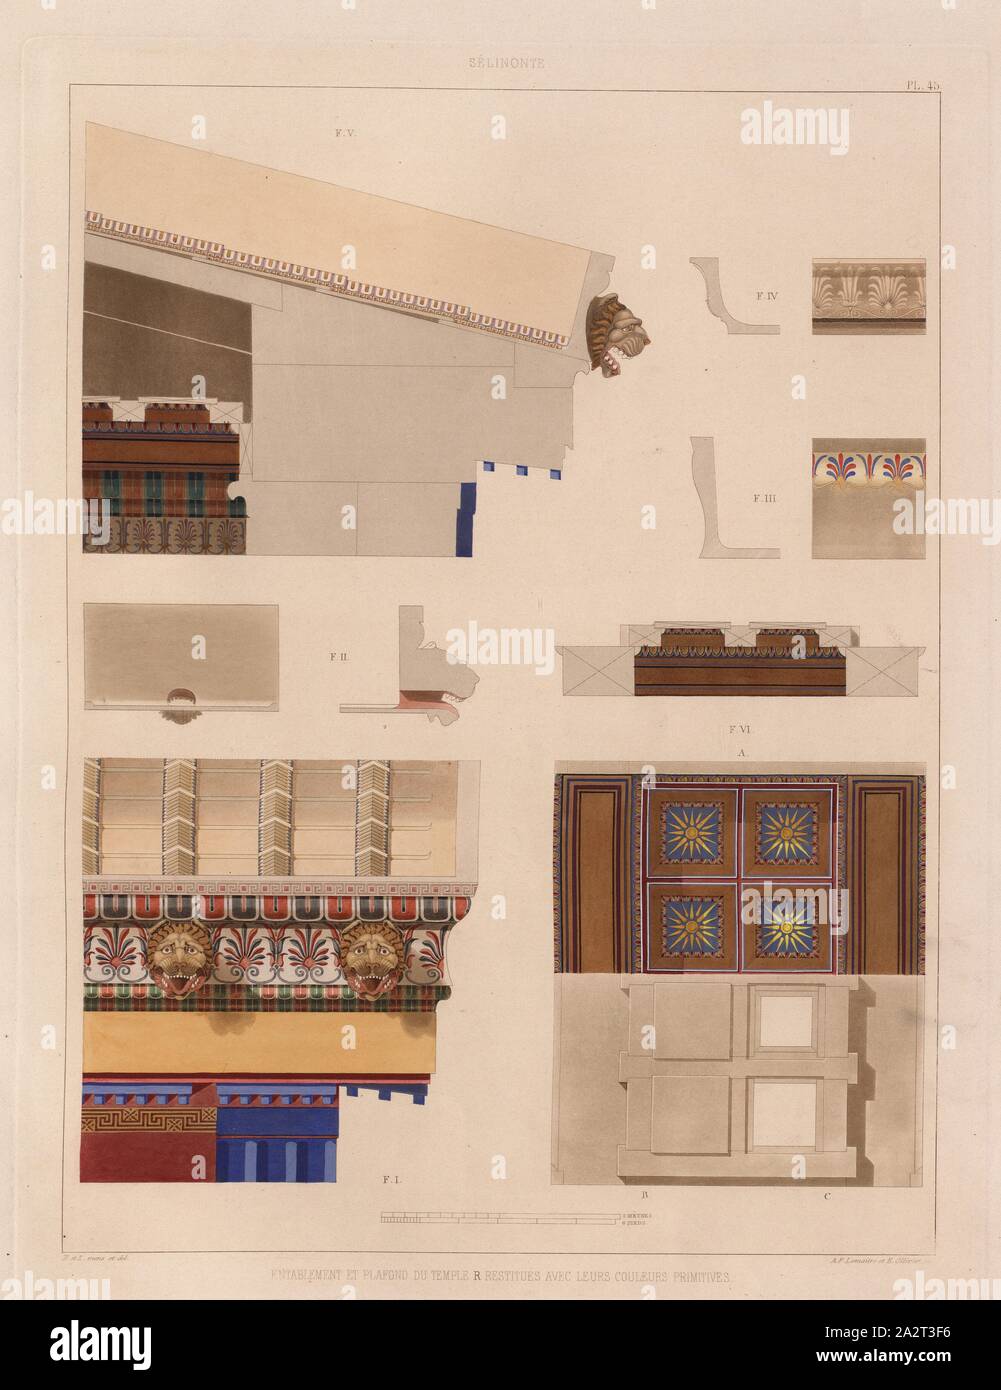 Selinunte, Illustration of the rafters and ceiling of the temple in their original colors from the 19th century, signed: H. et Z. mens., et del, A.F. Lemaitre et E. Ollivier sc, P. 45, p. 101, Hittorff, Jacques Ignace (mens. et del.); Zanth, Ludwig (mens. et del.); Lemaitre, A. F. (sc.); Ollivier, E. (sc.), 1870, Jacques Ignace Hittorff, Ludwig Zanth: Architecture antique de la Sicile: recueil des monuments de Ségeste et de Sélinonte mesurés et dessinés [...]. [Tome seconde]. Paris: imprimerie de E. Donnaud, 1870 Stock Photo